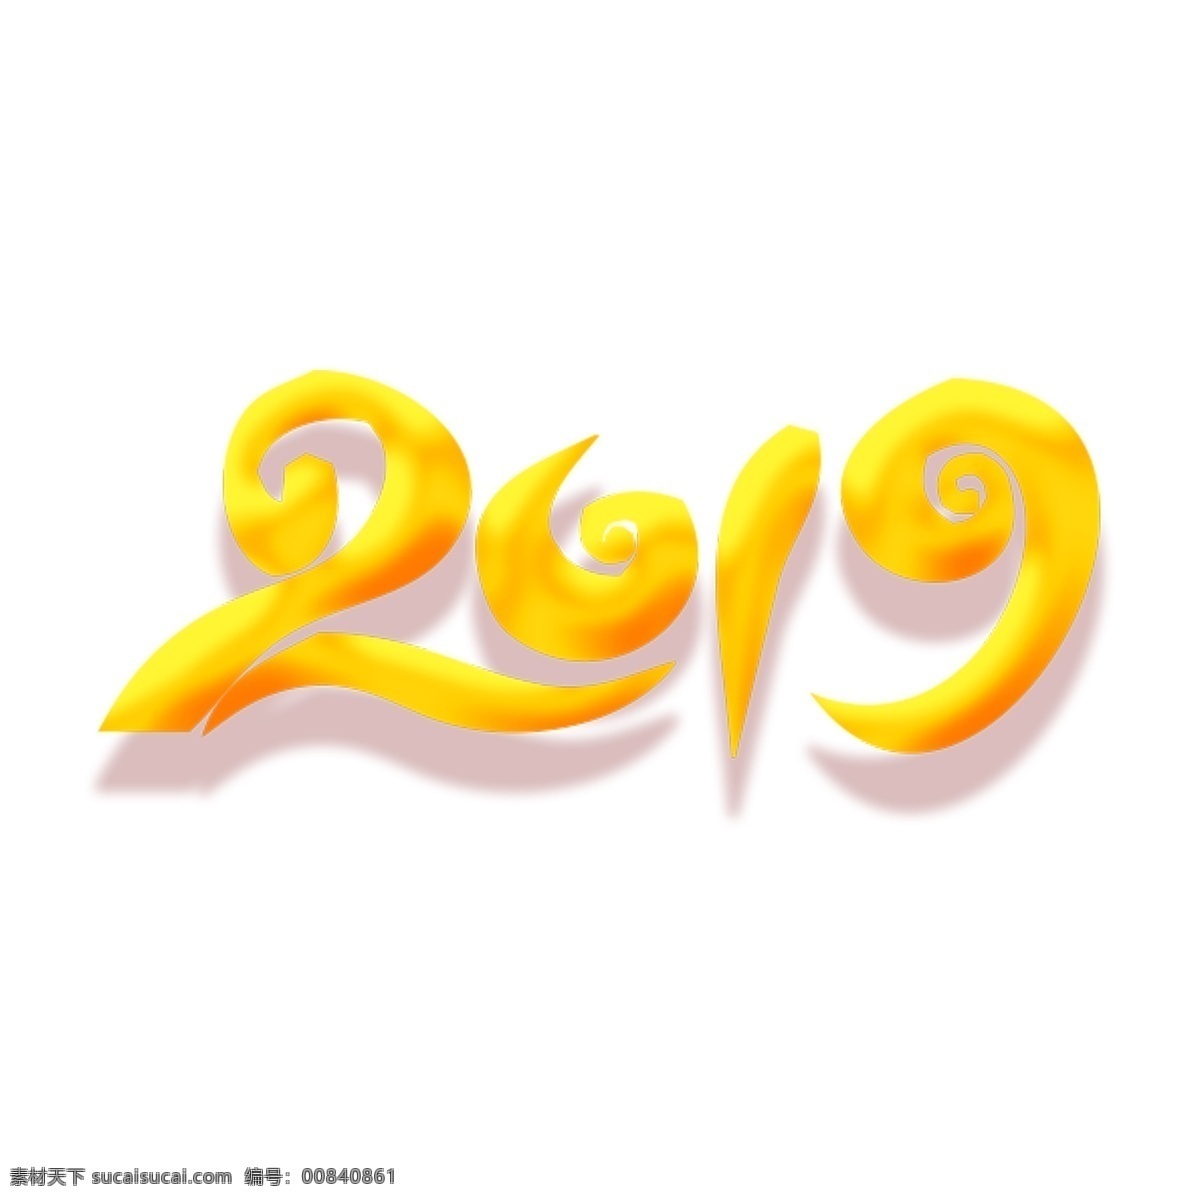 金色 2019 艺术 字 元素 字体设计 免抠元素 艺术字